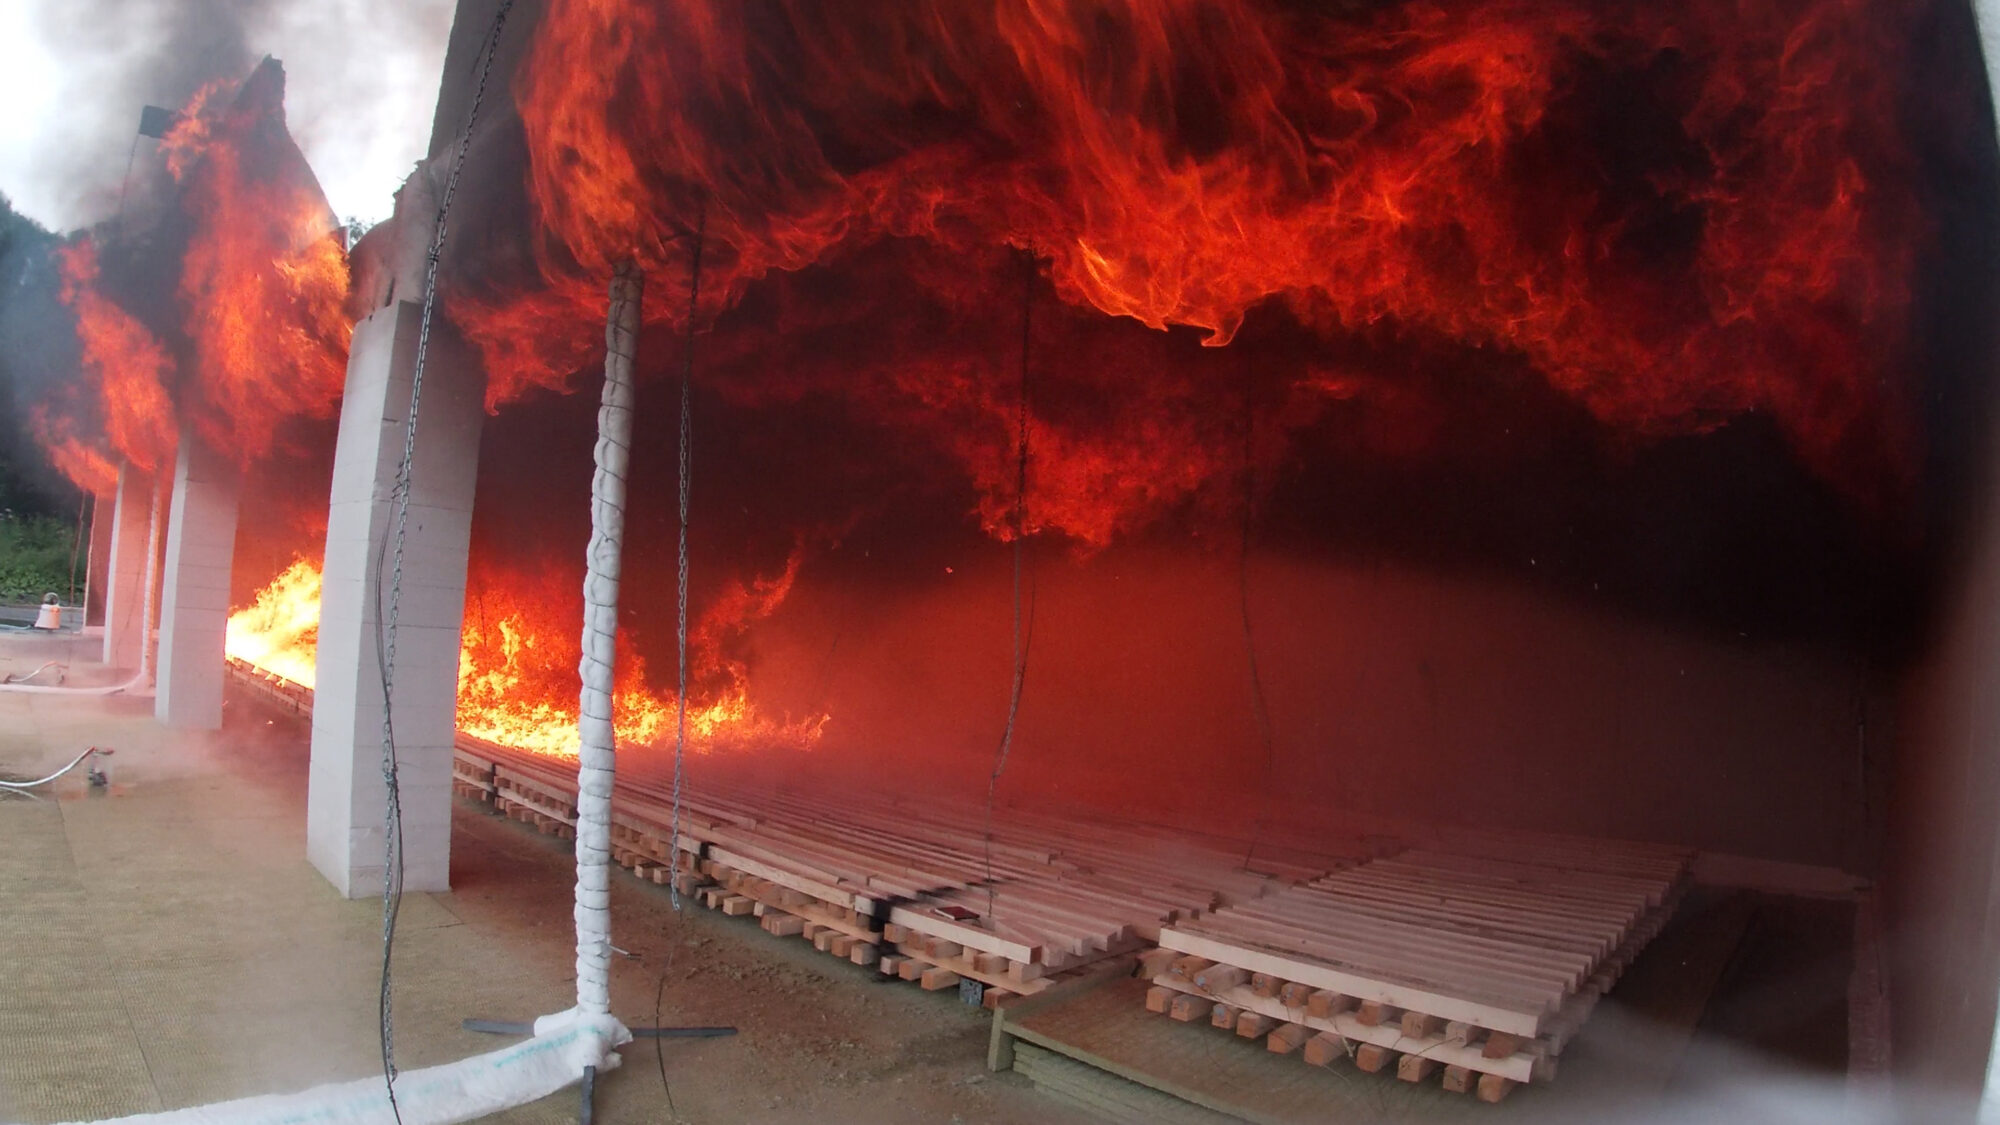 Fuoco di legno duro: il fuoco si diffonde lungo il soffitto di legno duro.  In questo esperimento la parete di fondo è ricoperta di cartongesso.